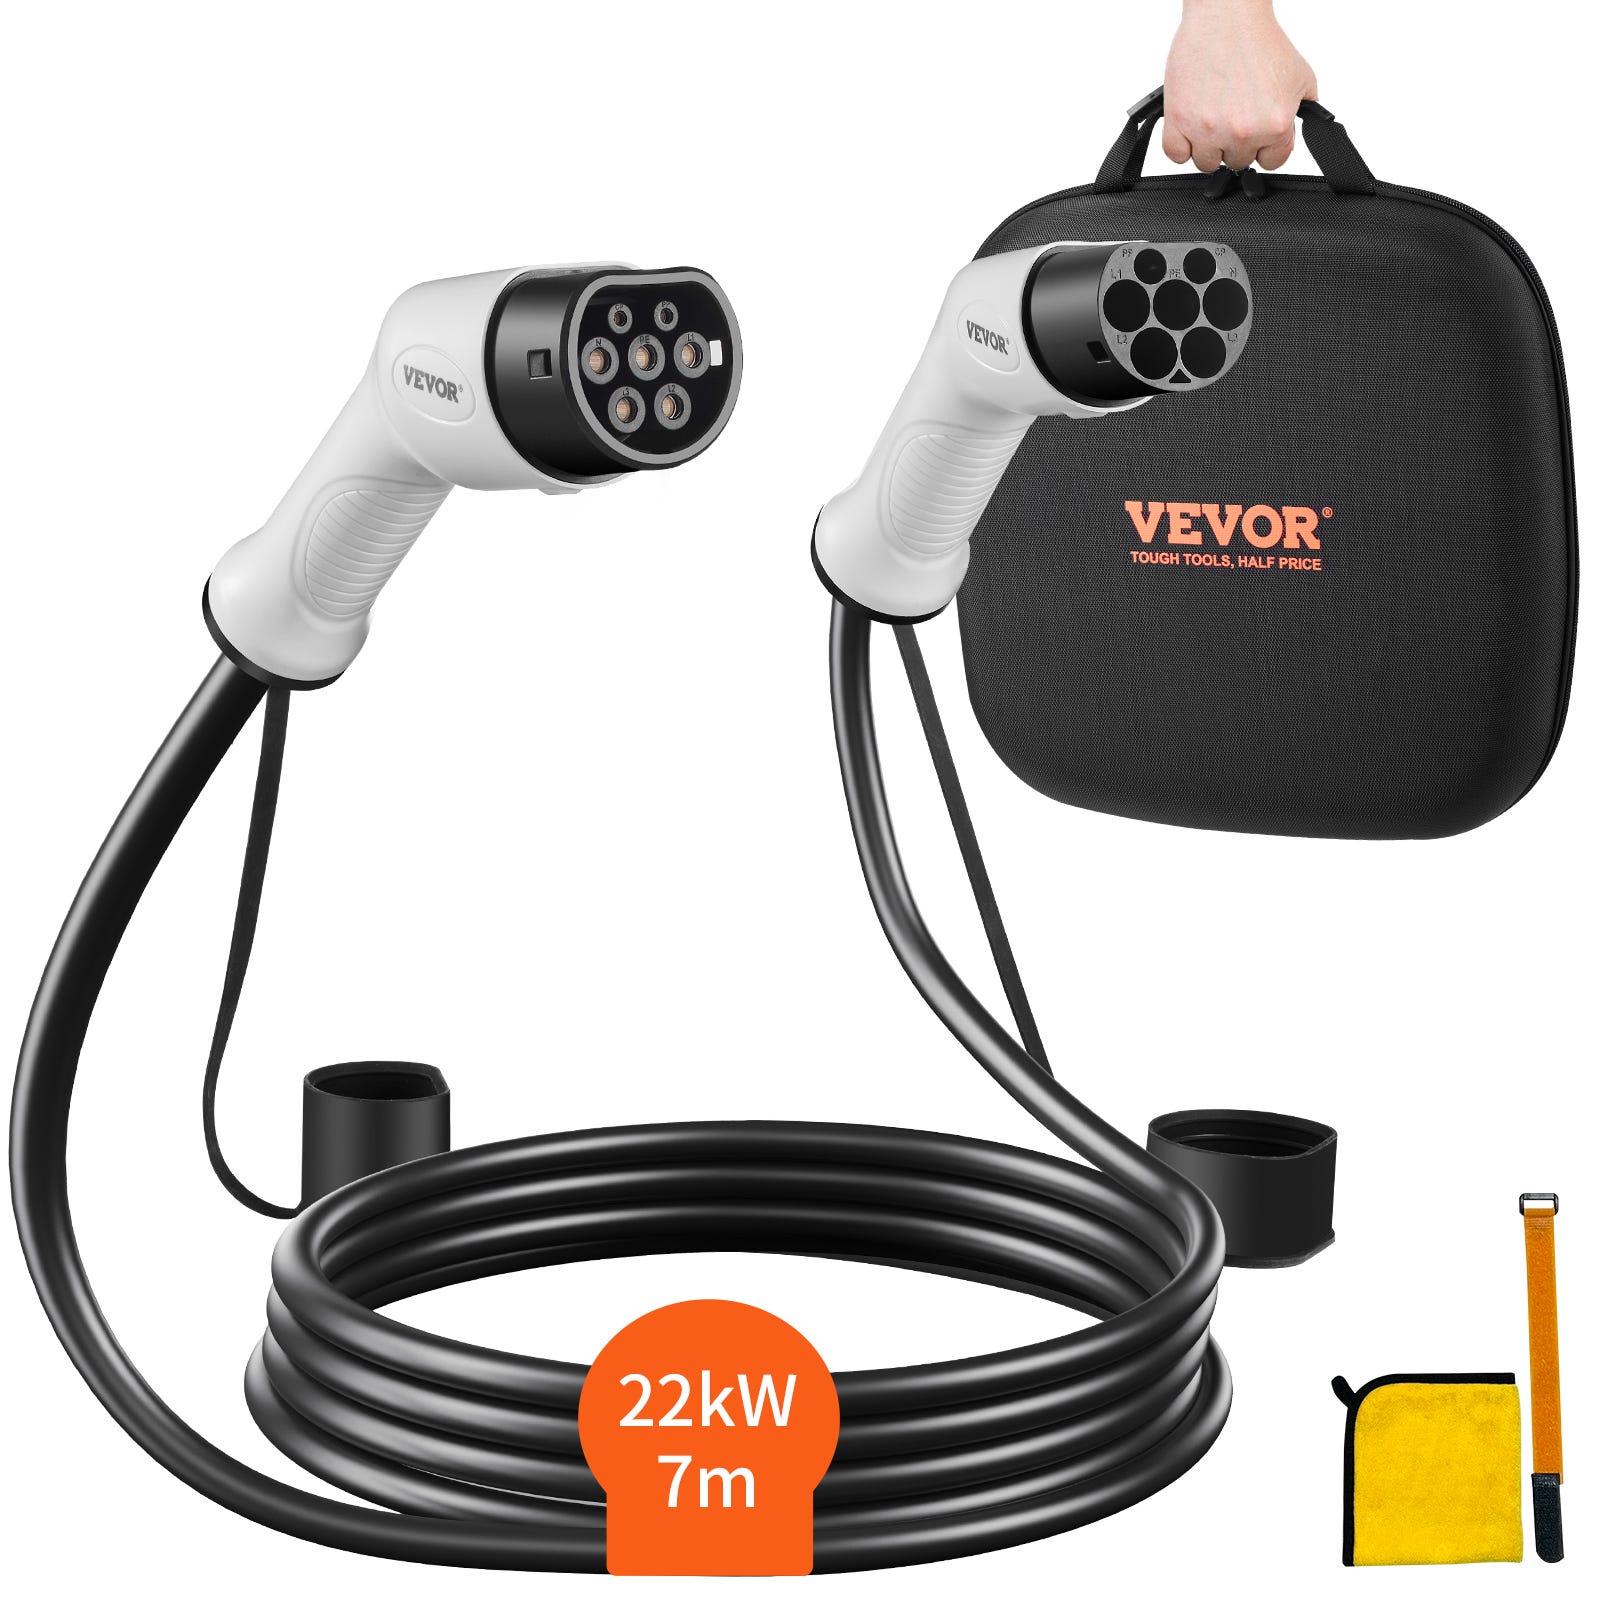 Câble de recharge pour véhicule électrique - Type 2 (3m) VICTRON ENERGY